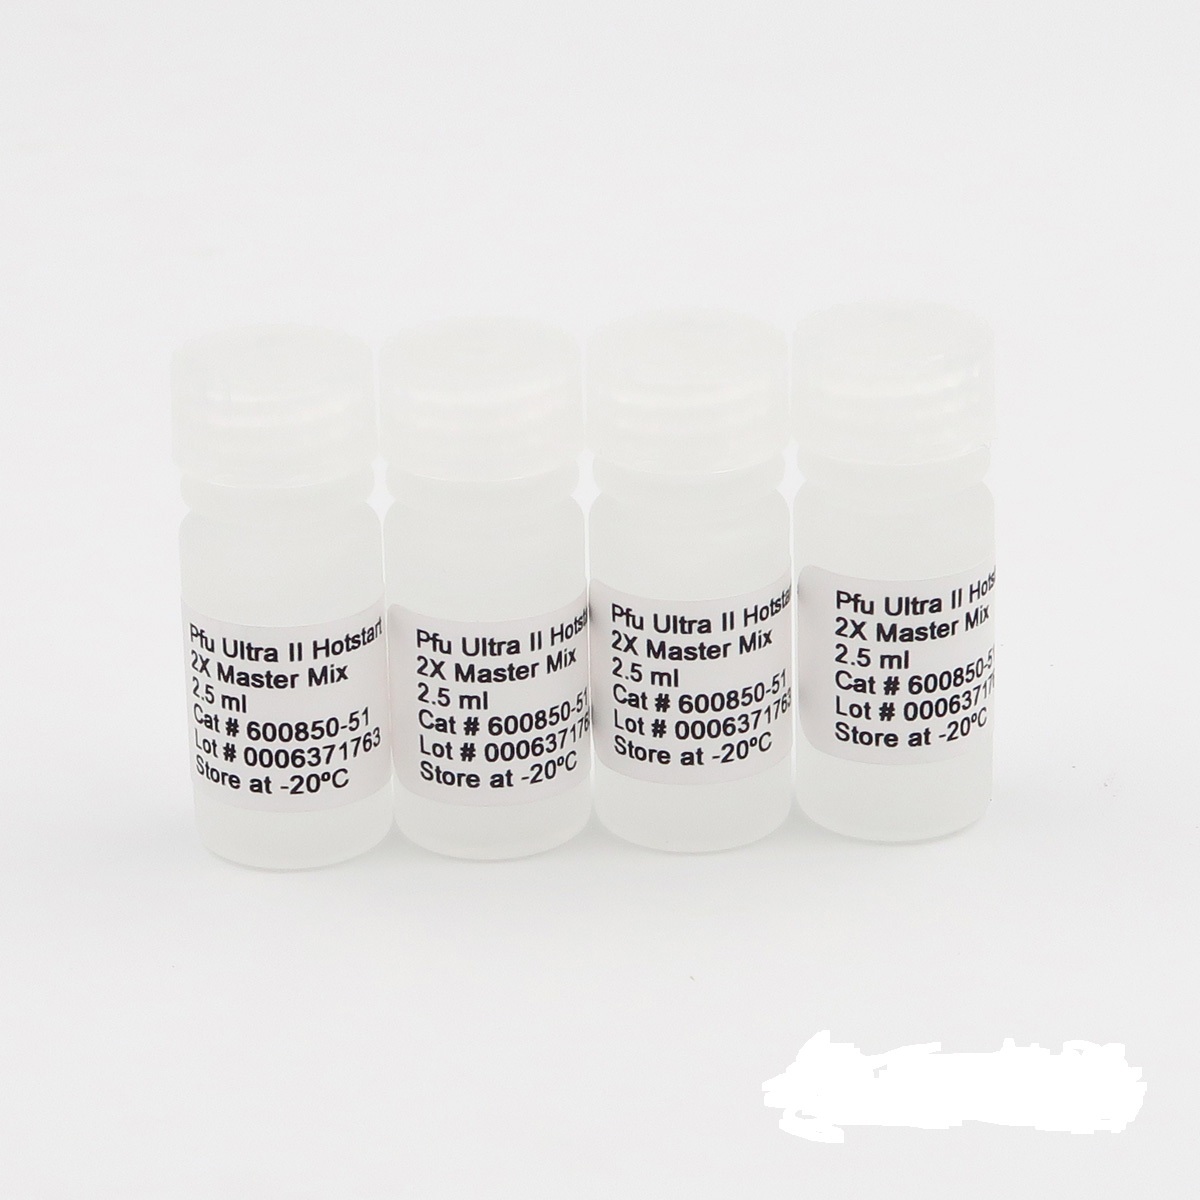 毛样枝孢霉染料法荧光定量PCR试剂盒